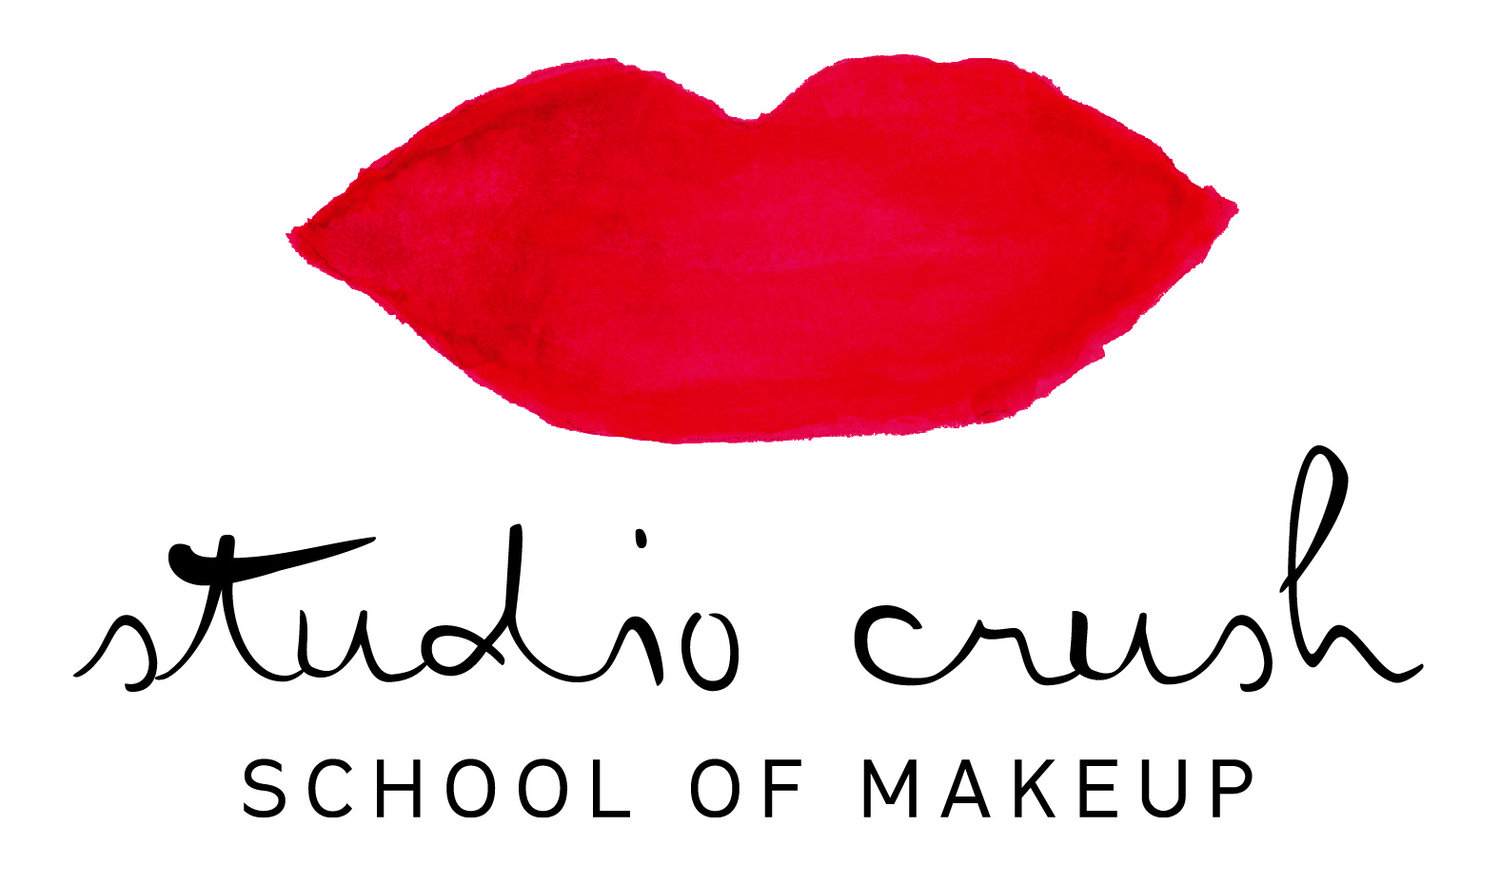 Studio Crush School of Makeup Atlanta